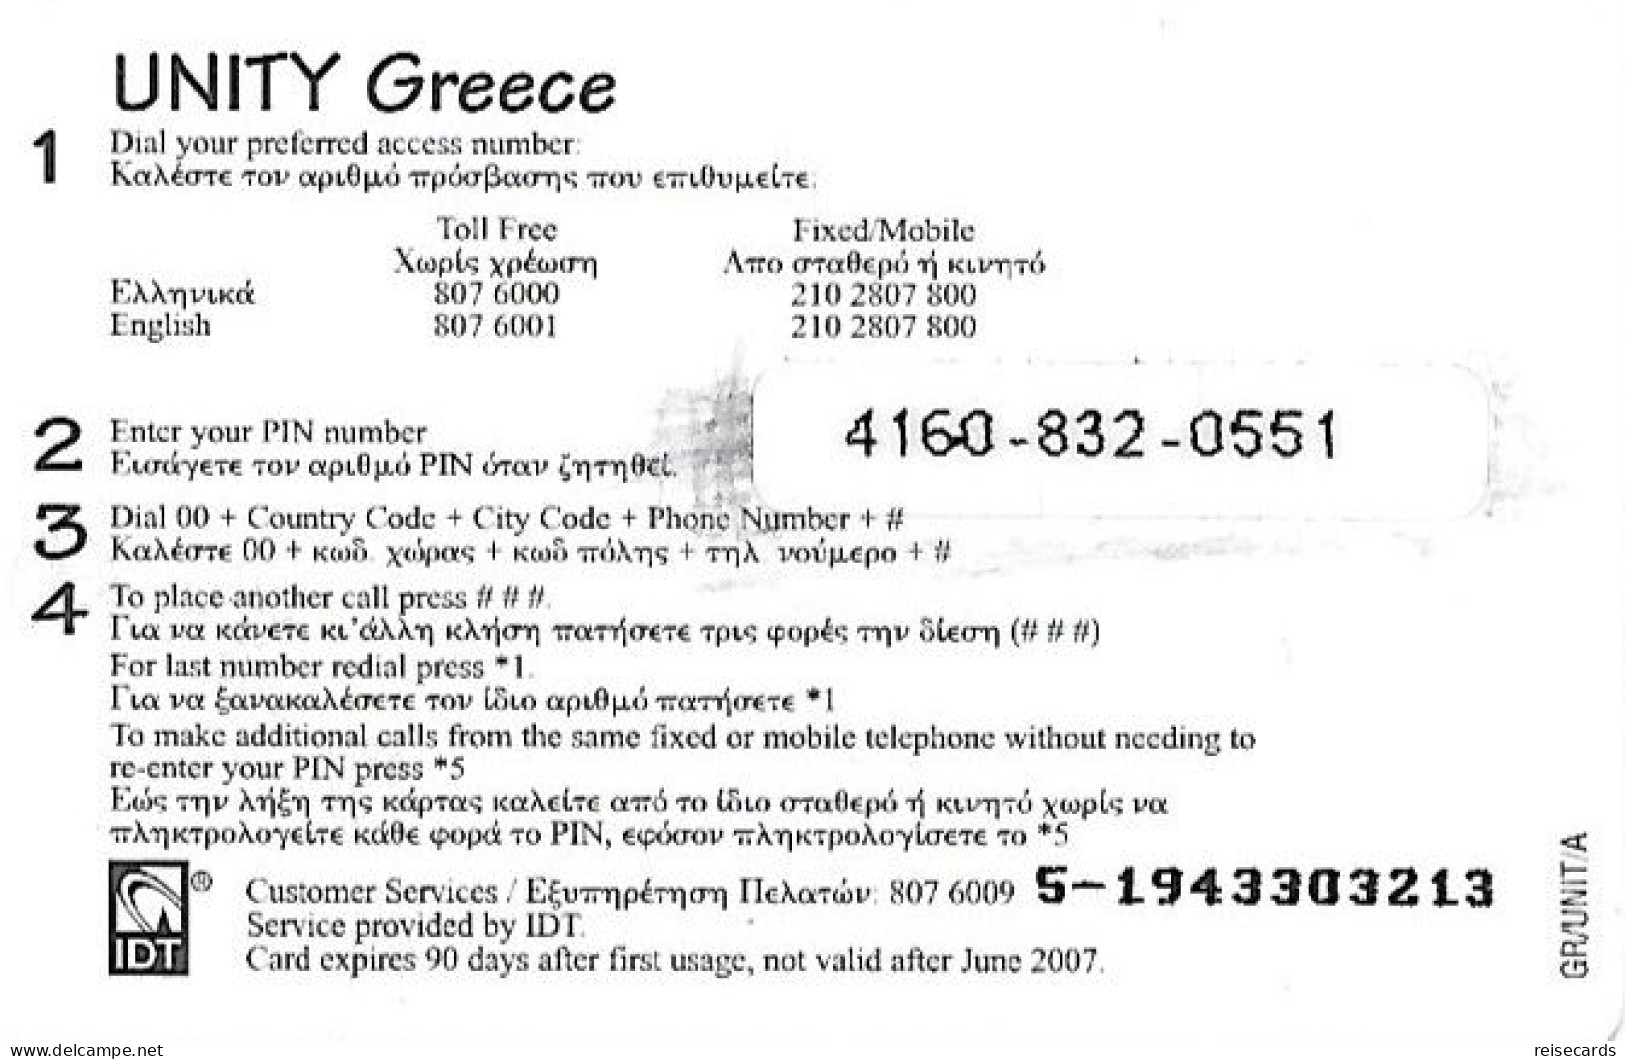 Greece: Prepaid IDT Unity 06.07 - Greece